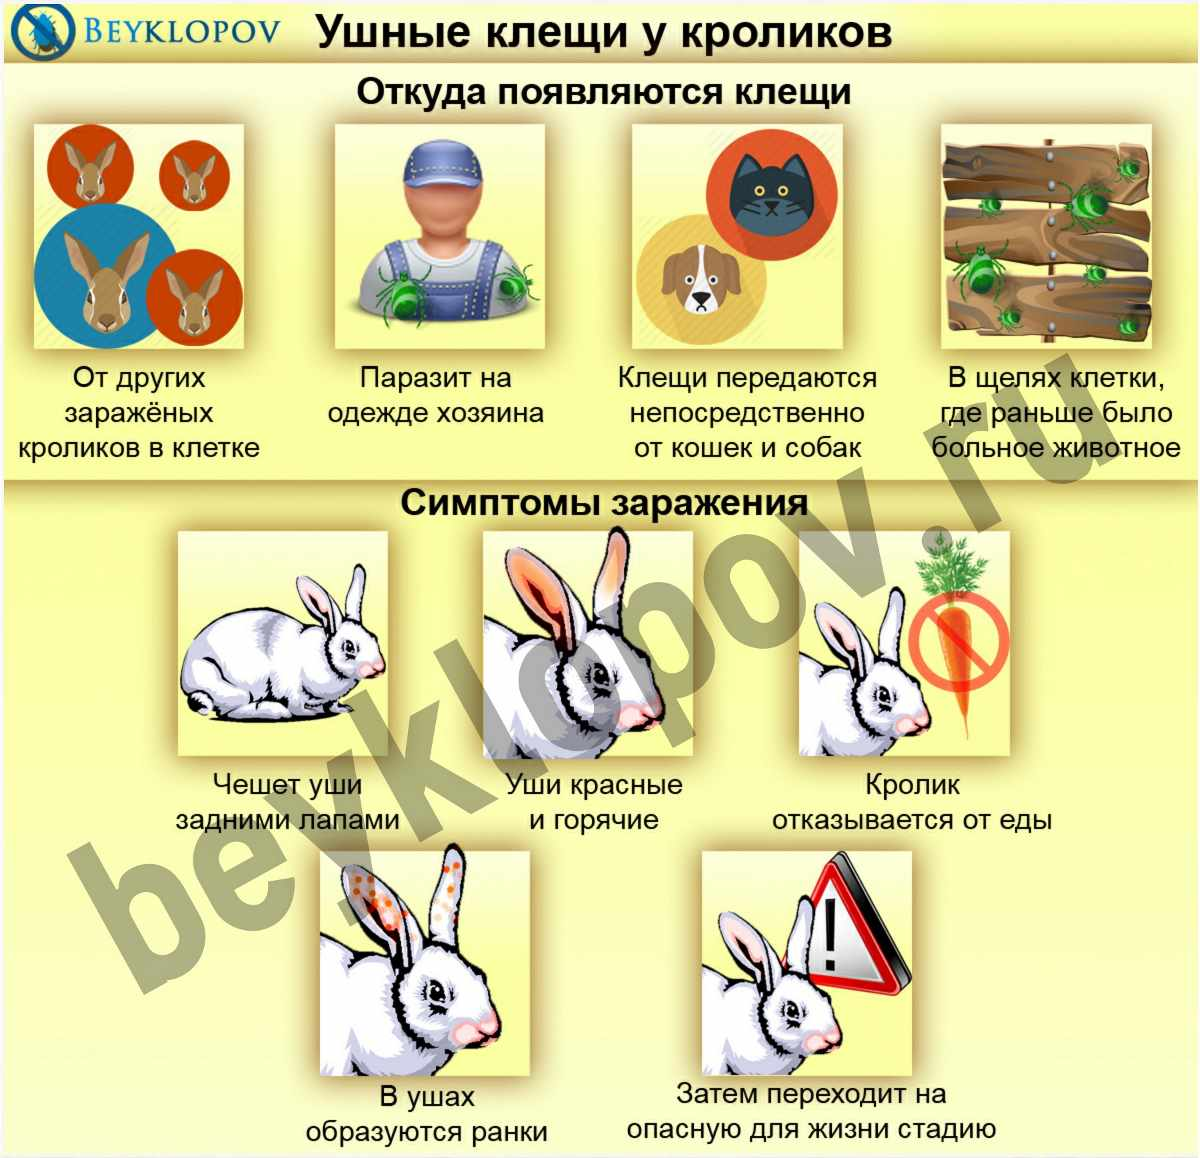 Ушной клещ у кроликов: лечение каплями и спреем, народные рецепты